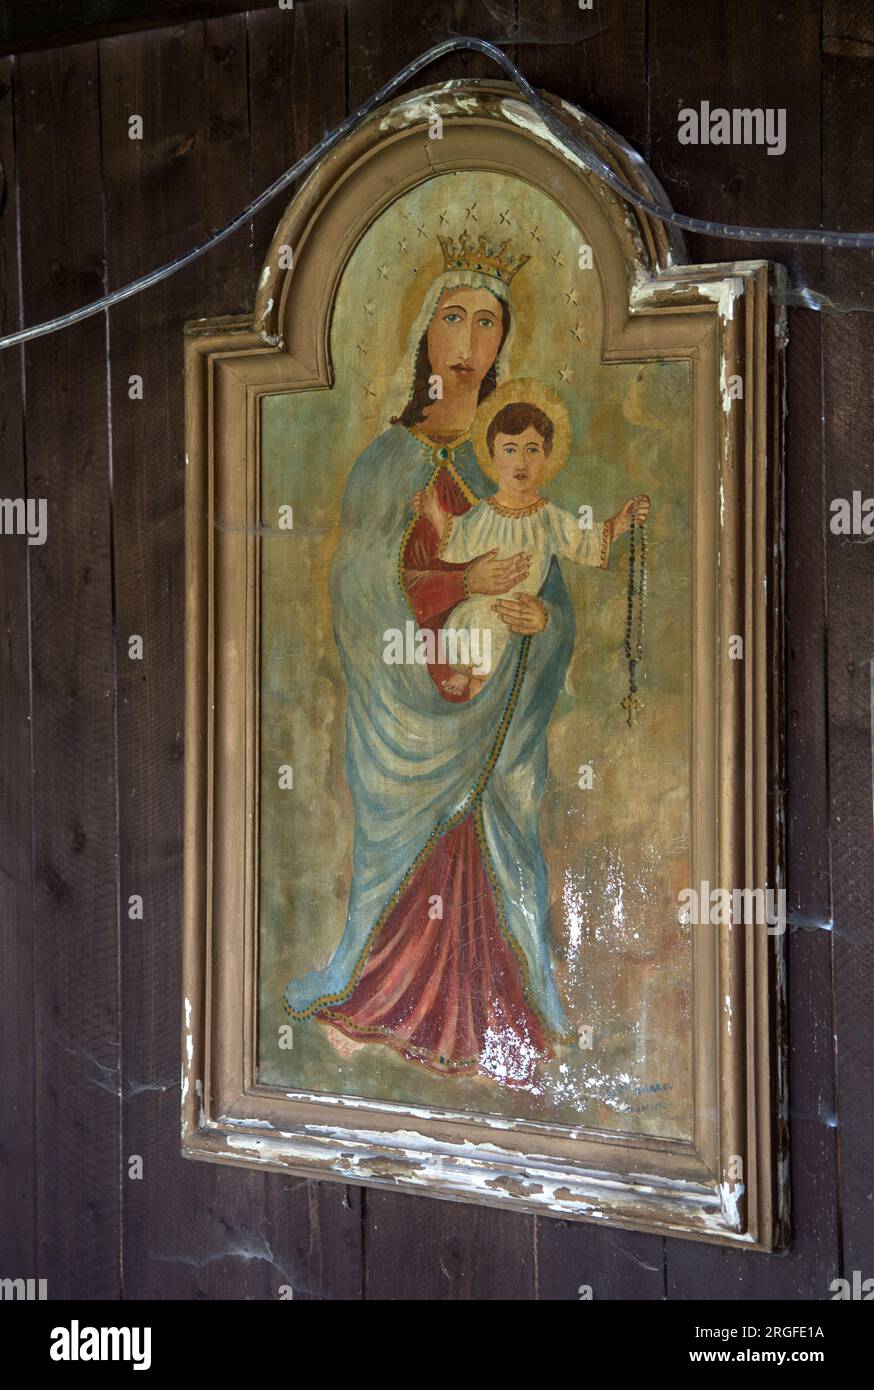 Peinture à l'huile primitive de la Vierge à l'enfant, située dans un abri en bois près de l'église de Saint Matthieu, où une scène de nativité de Noël est exposée. Sumiac, district de Brezno, Slovaquie août 2023. HOMER SYKES des années 2020 Banque D'Images